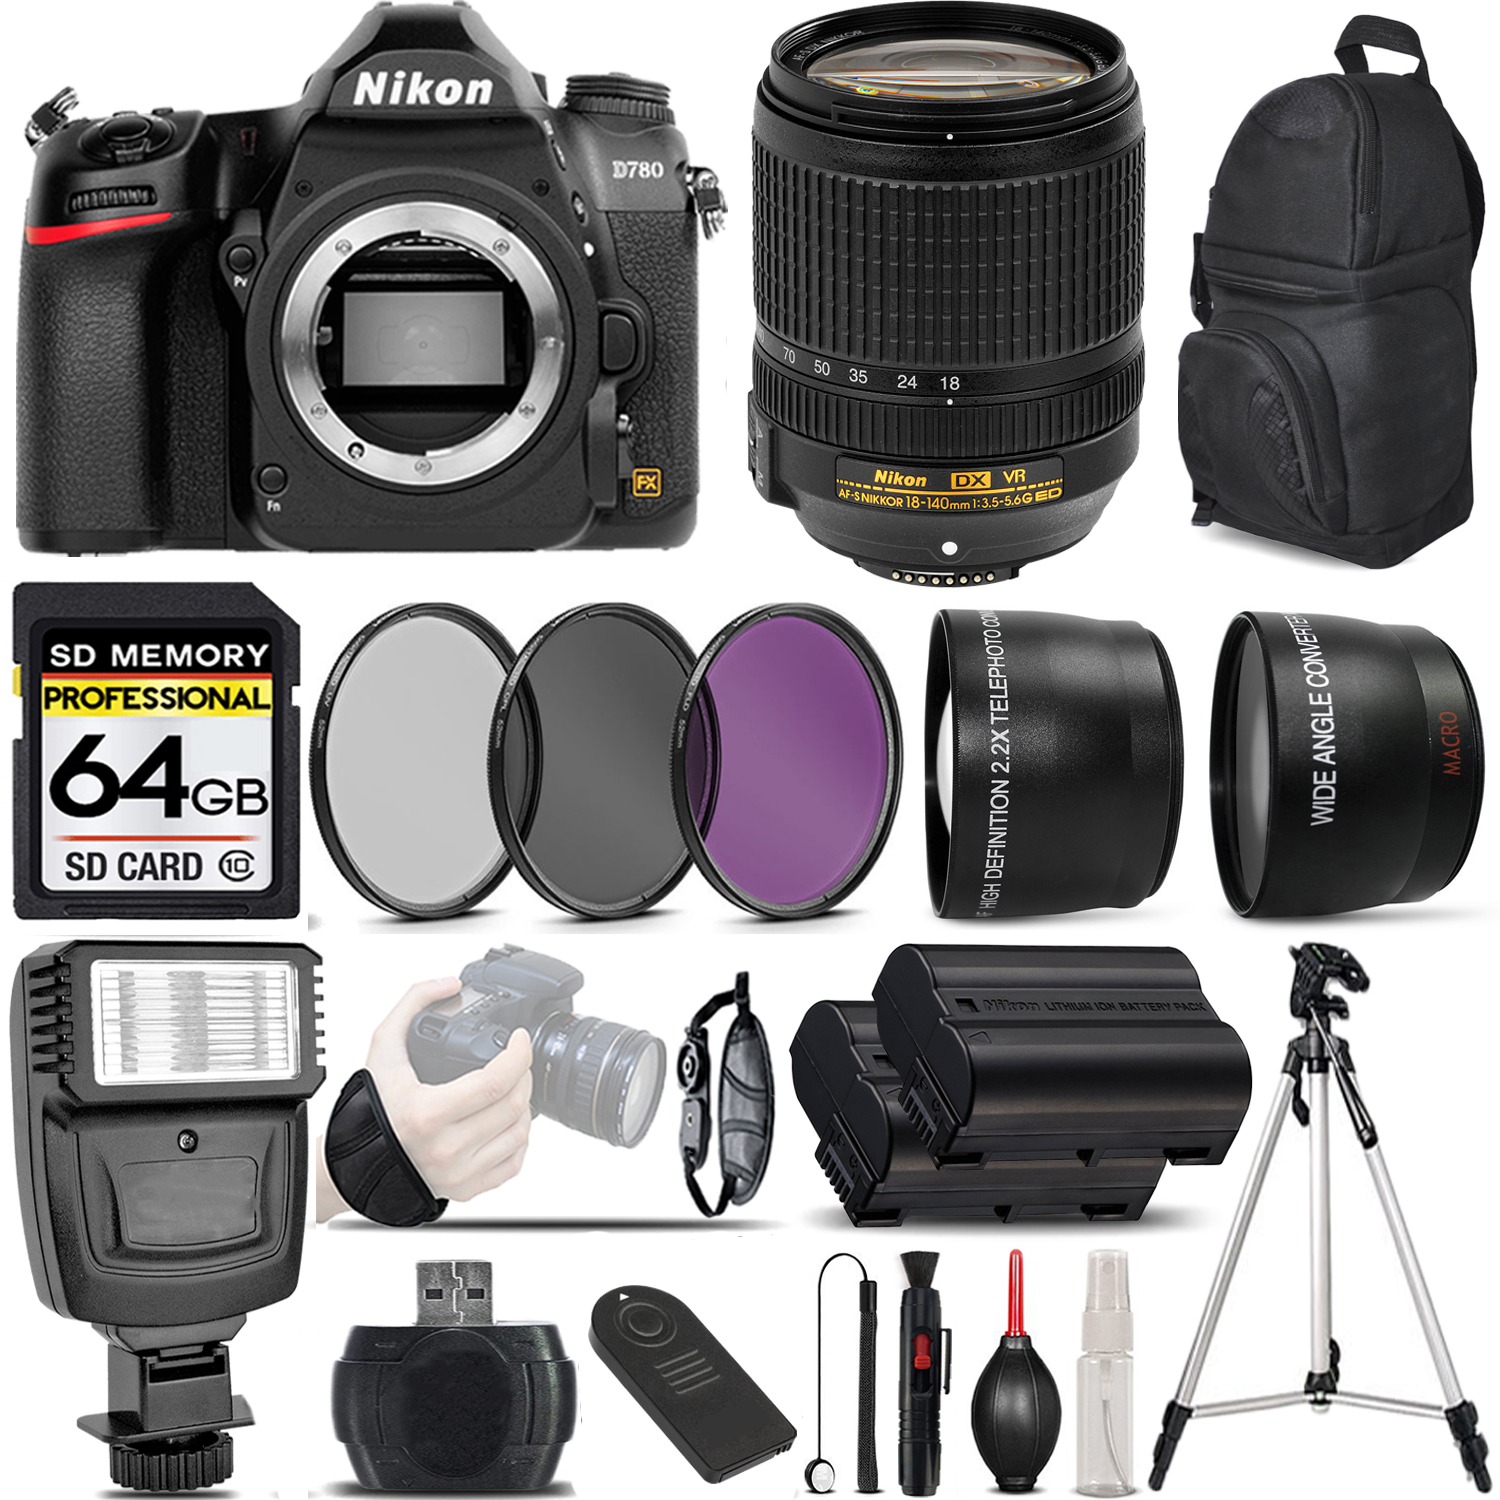 D780 DSLR Camera + 18-140mm VR AF-S Lens + 3 Piece Filter Set + 64GB Savings Bundle *FREE SHIPPING*